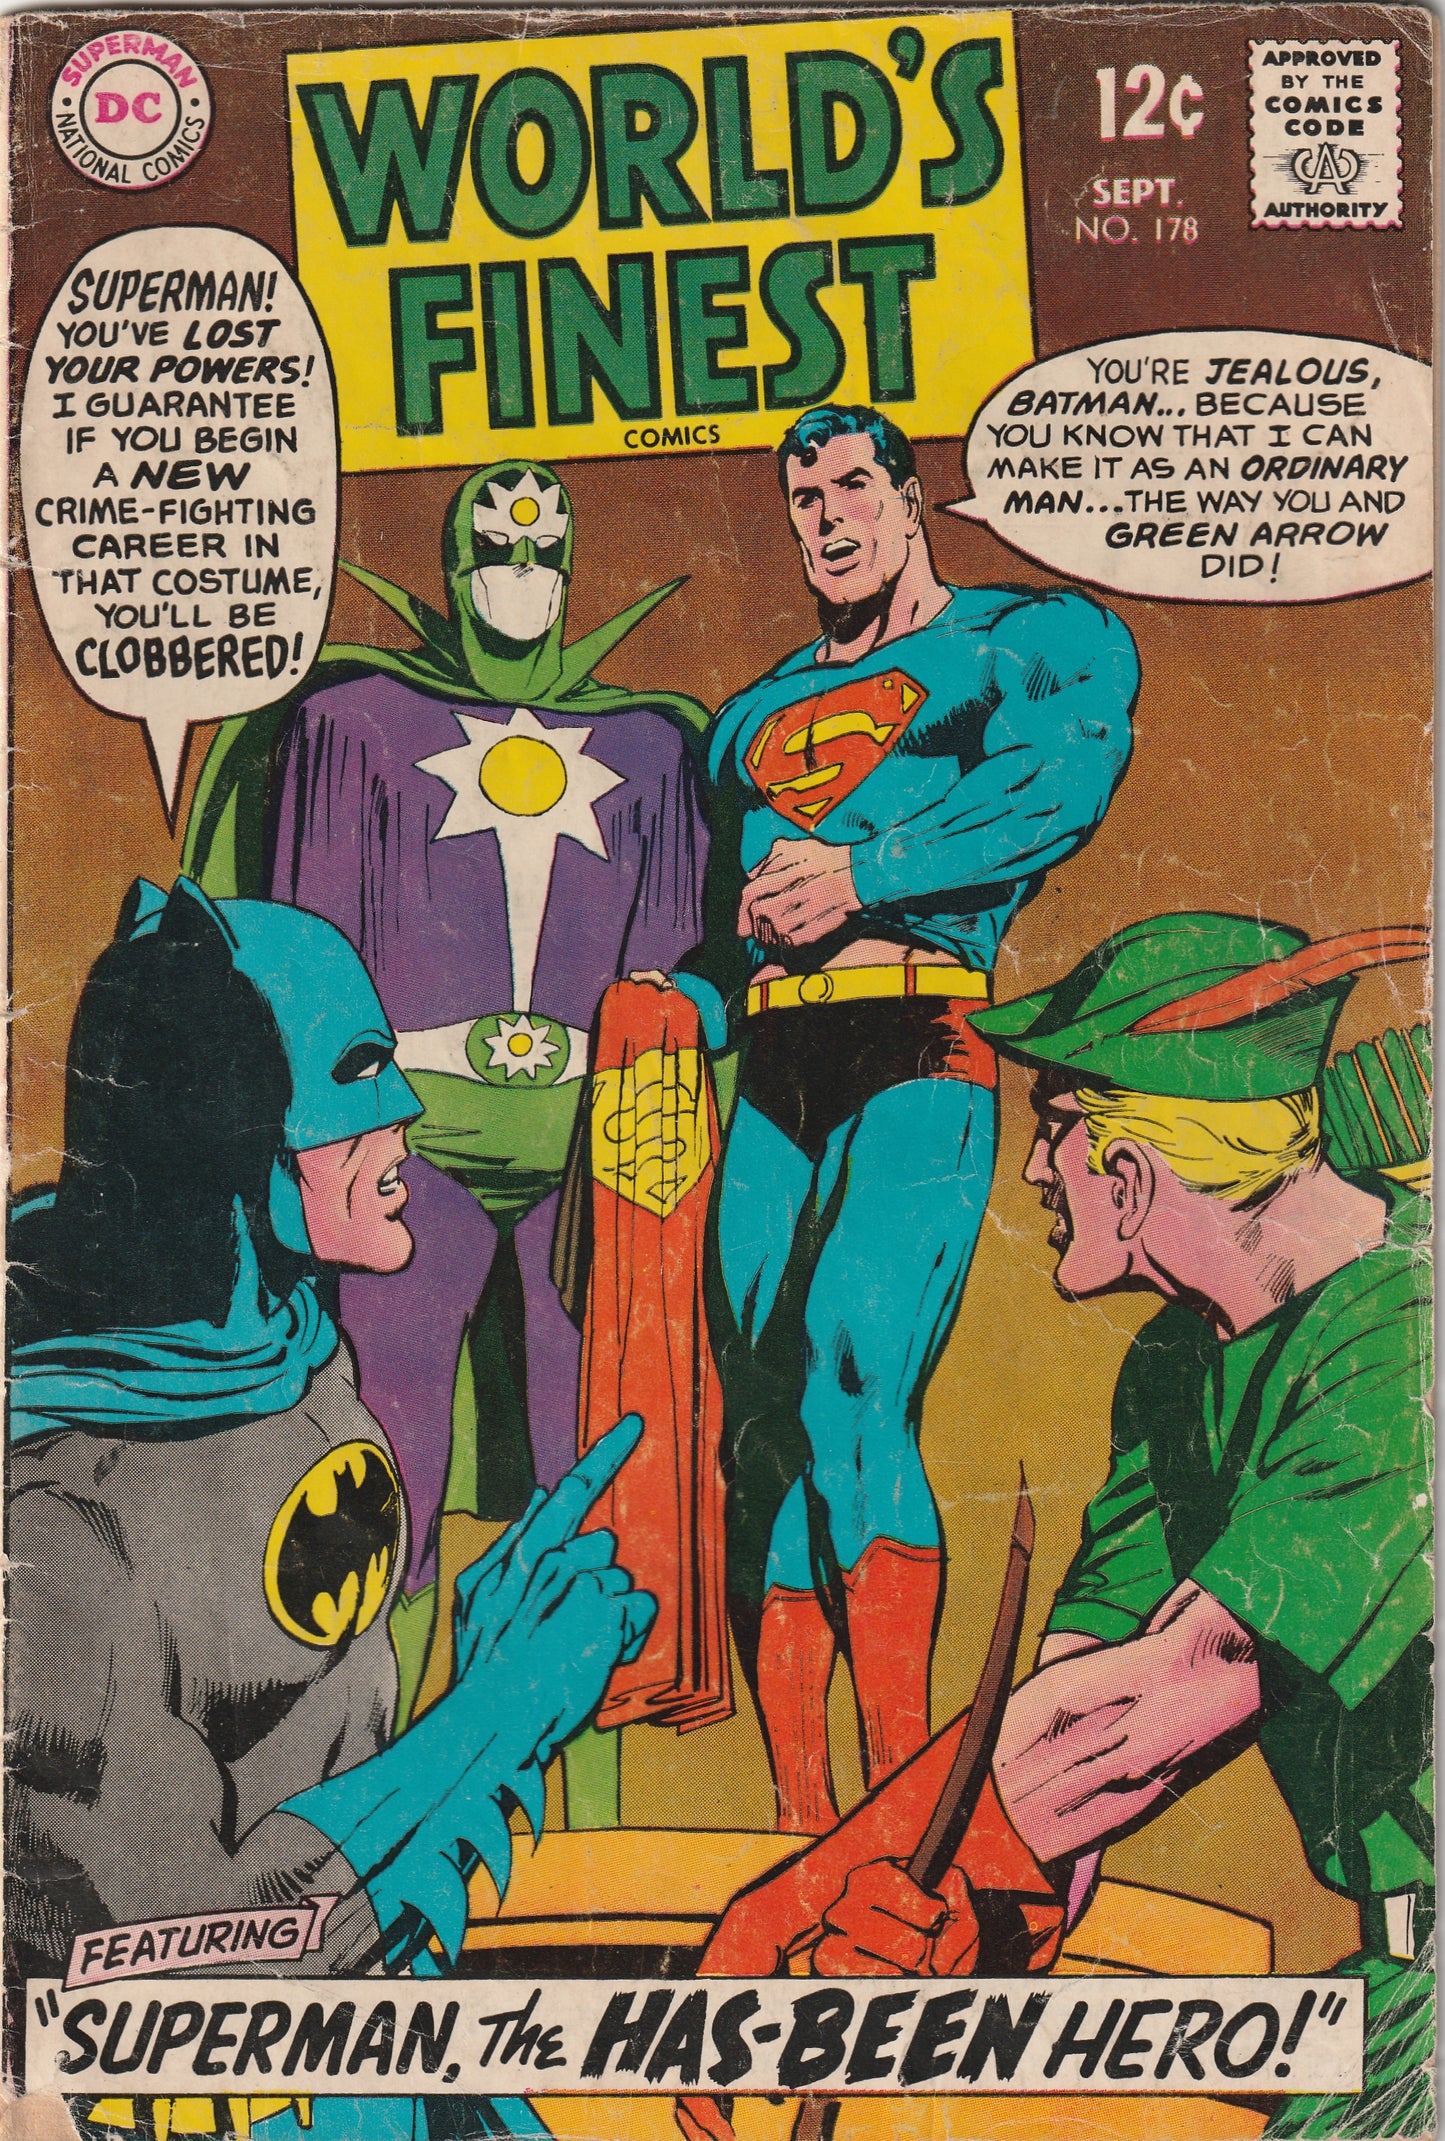 World's Finest #178 (1968) - Intro of Super Nova; Adams cover